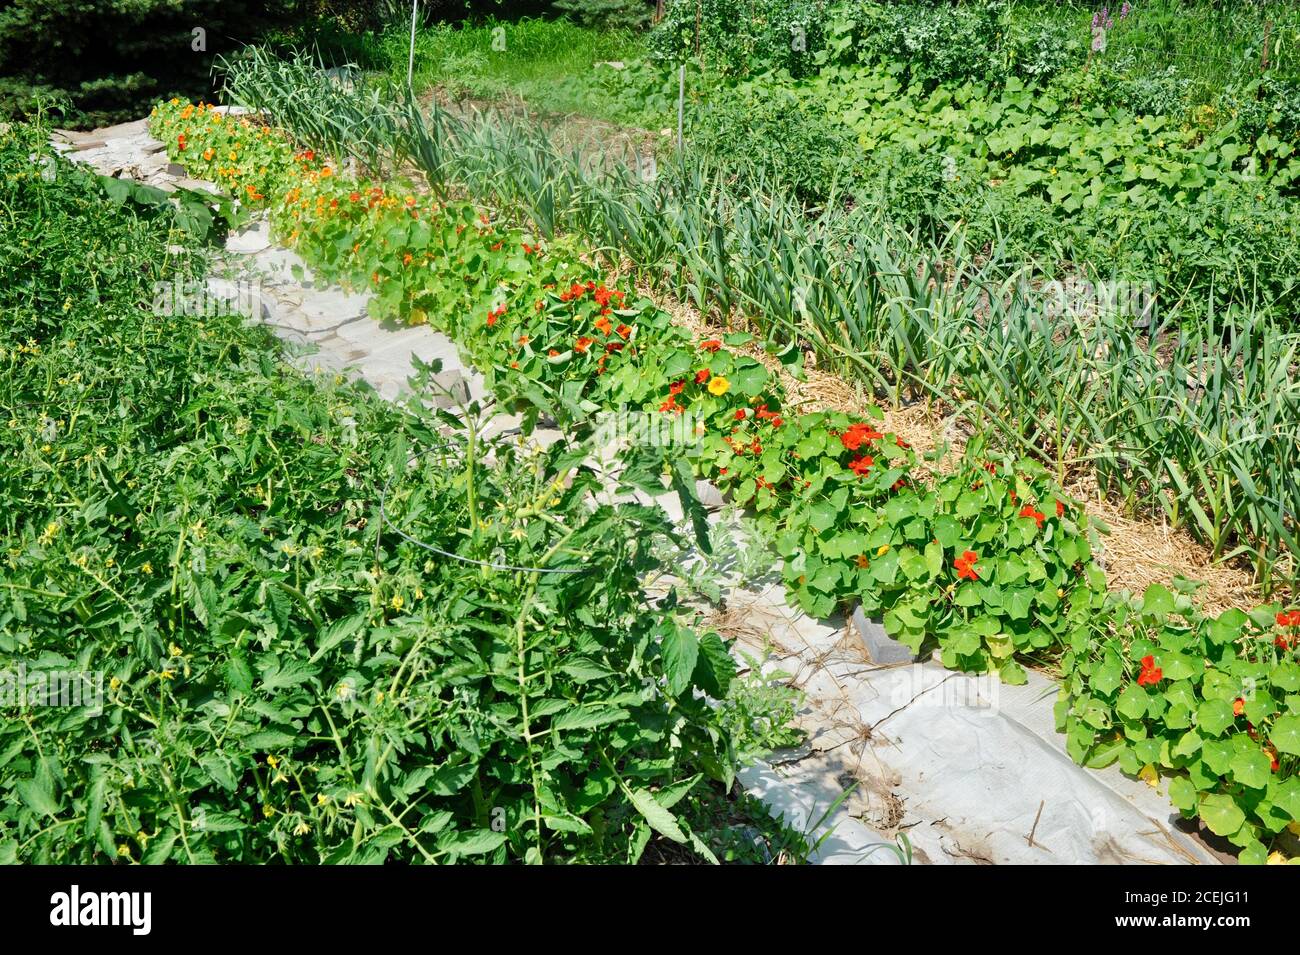 Reihen von verschiedenen gesunden Pflanzen wie Knoblauch, Nasturtien,  Tomaten und Gurken, auf einer kleinen Farm in Browntown, Wisconsin, USA  Stockfotografie - Alamy